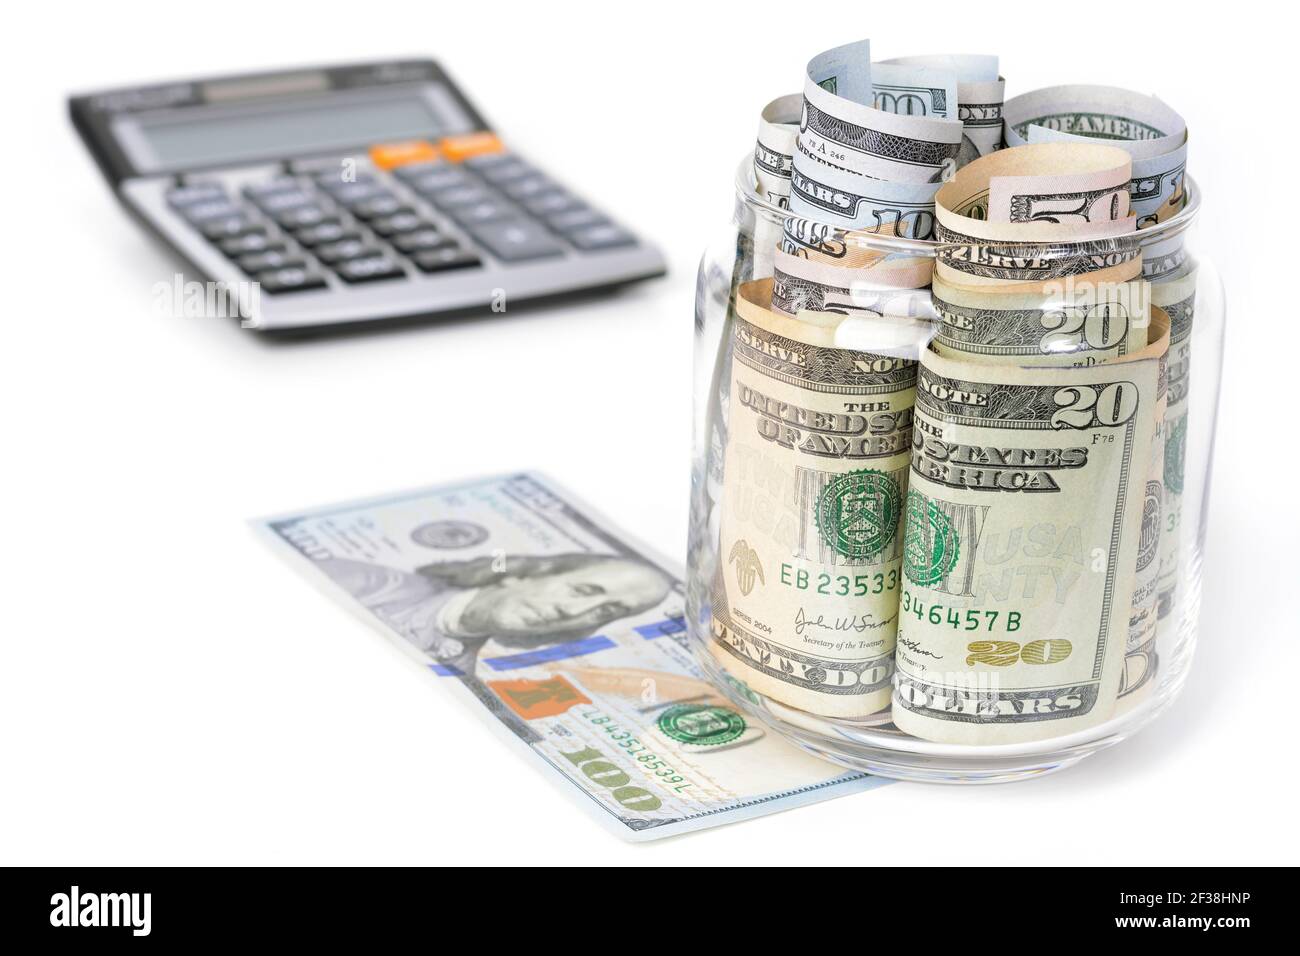 Argent, billets en dollars américains, avec calculatrice sur table blanche - concepts financiers et comptables Banque D'Images